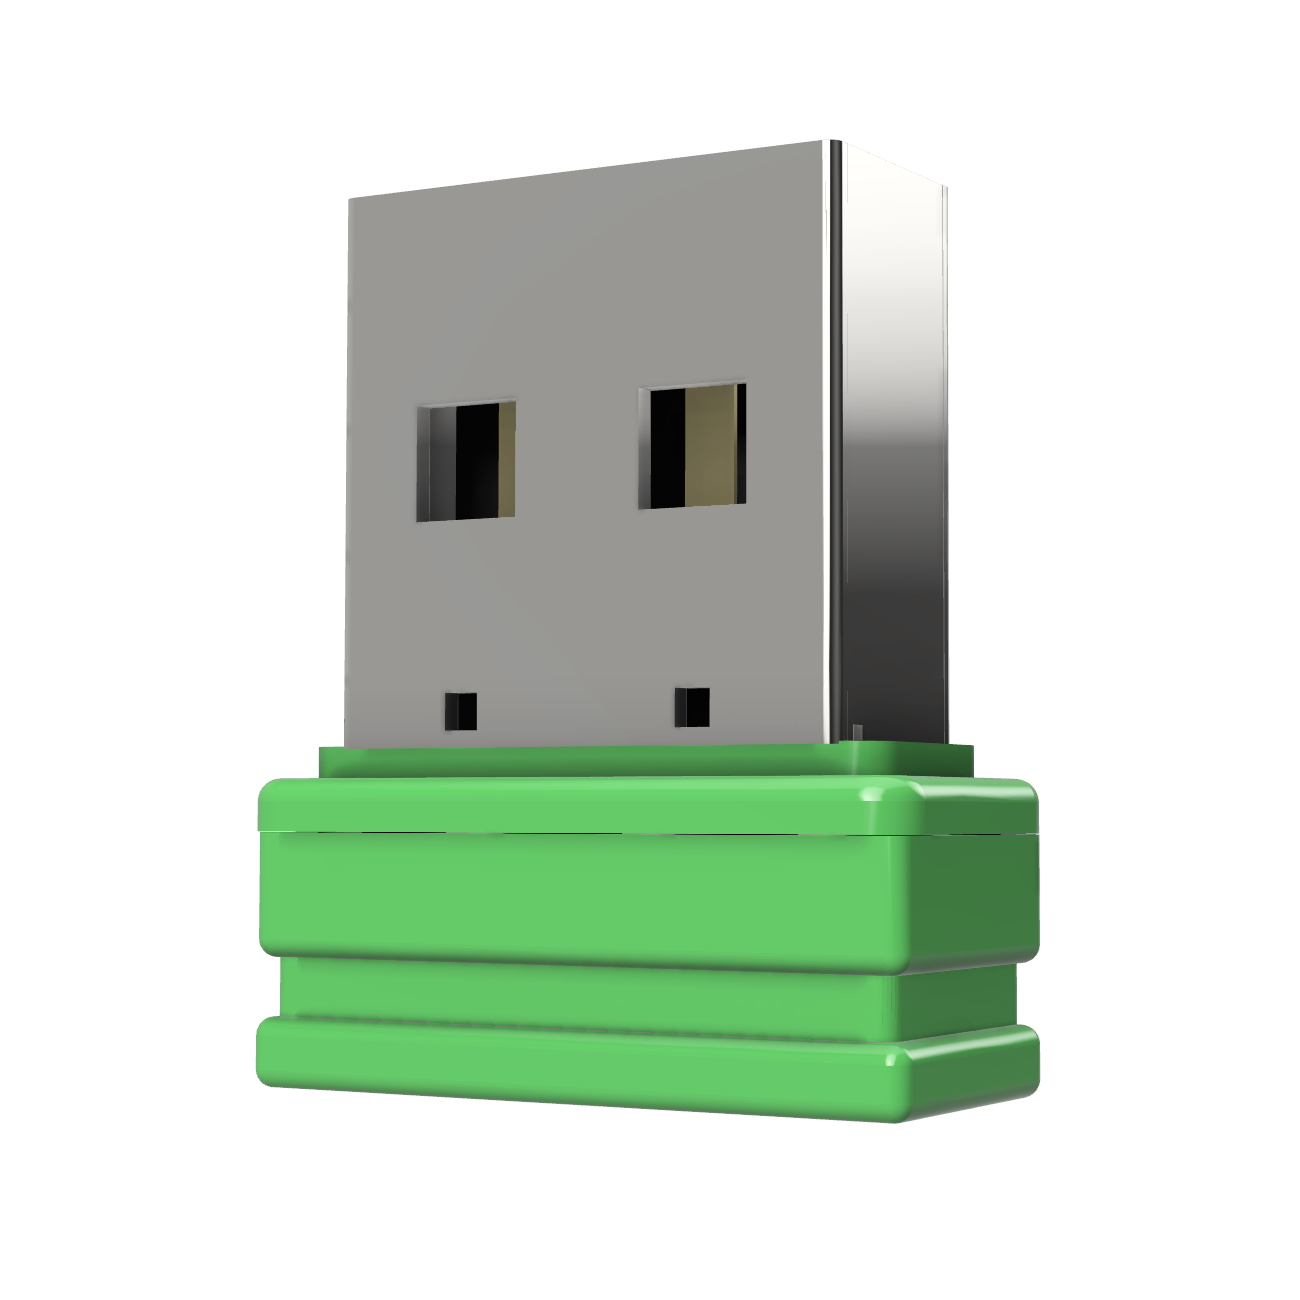 USB P1 Mini USB-Stick GB) ®ULTRA (Grün, GERMANY 4